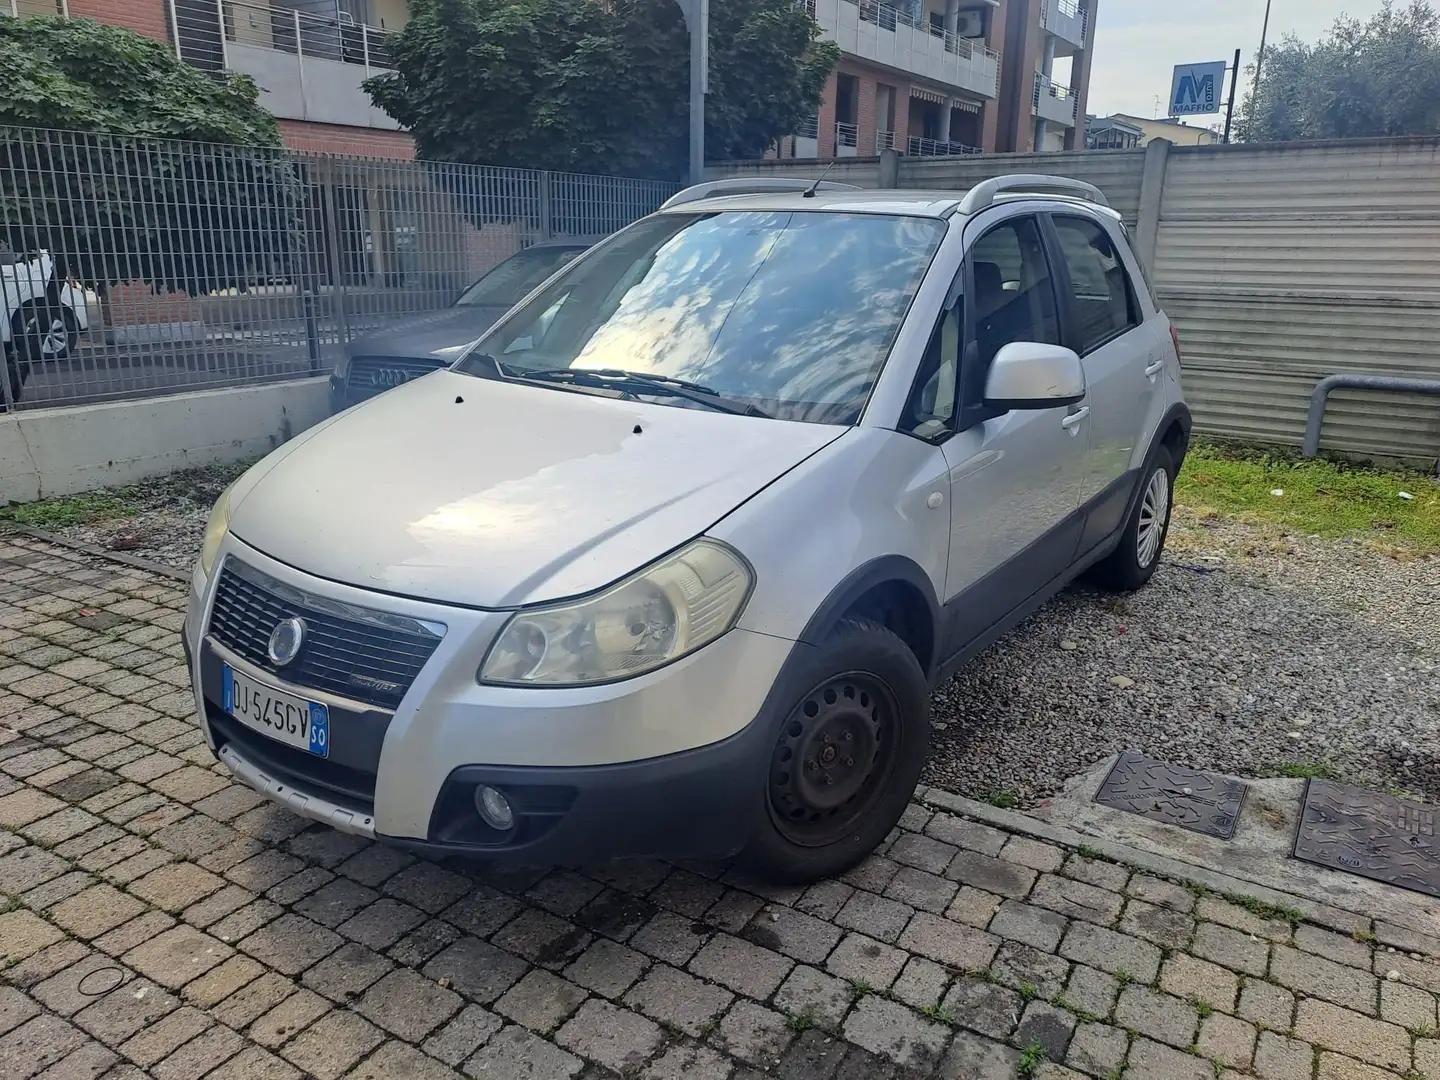 usato Fiat Sedici Berlina a Cesano Maderno - Monza-Brianza - Mb per €  3.850,-